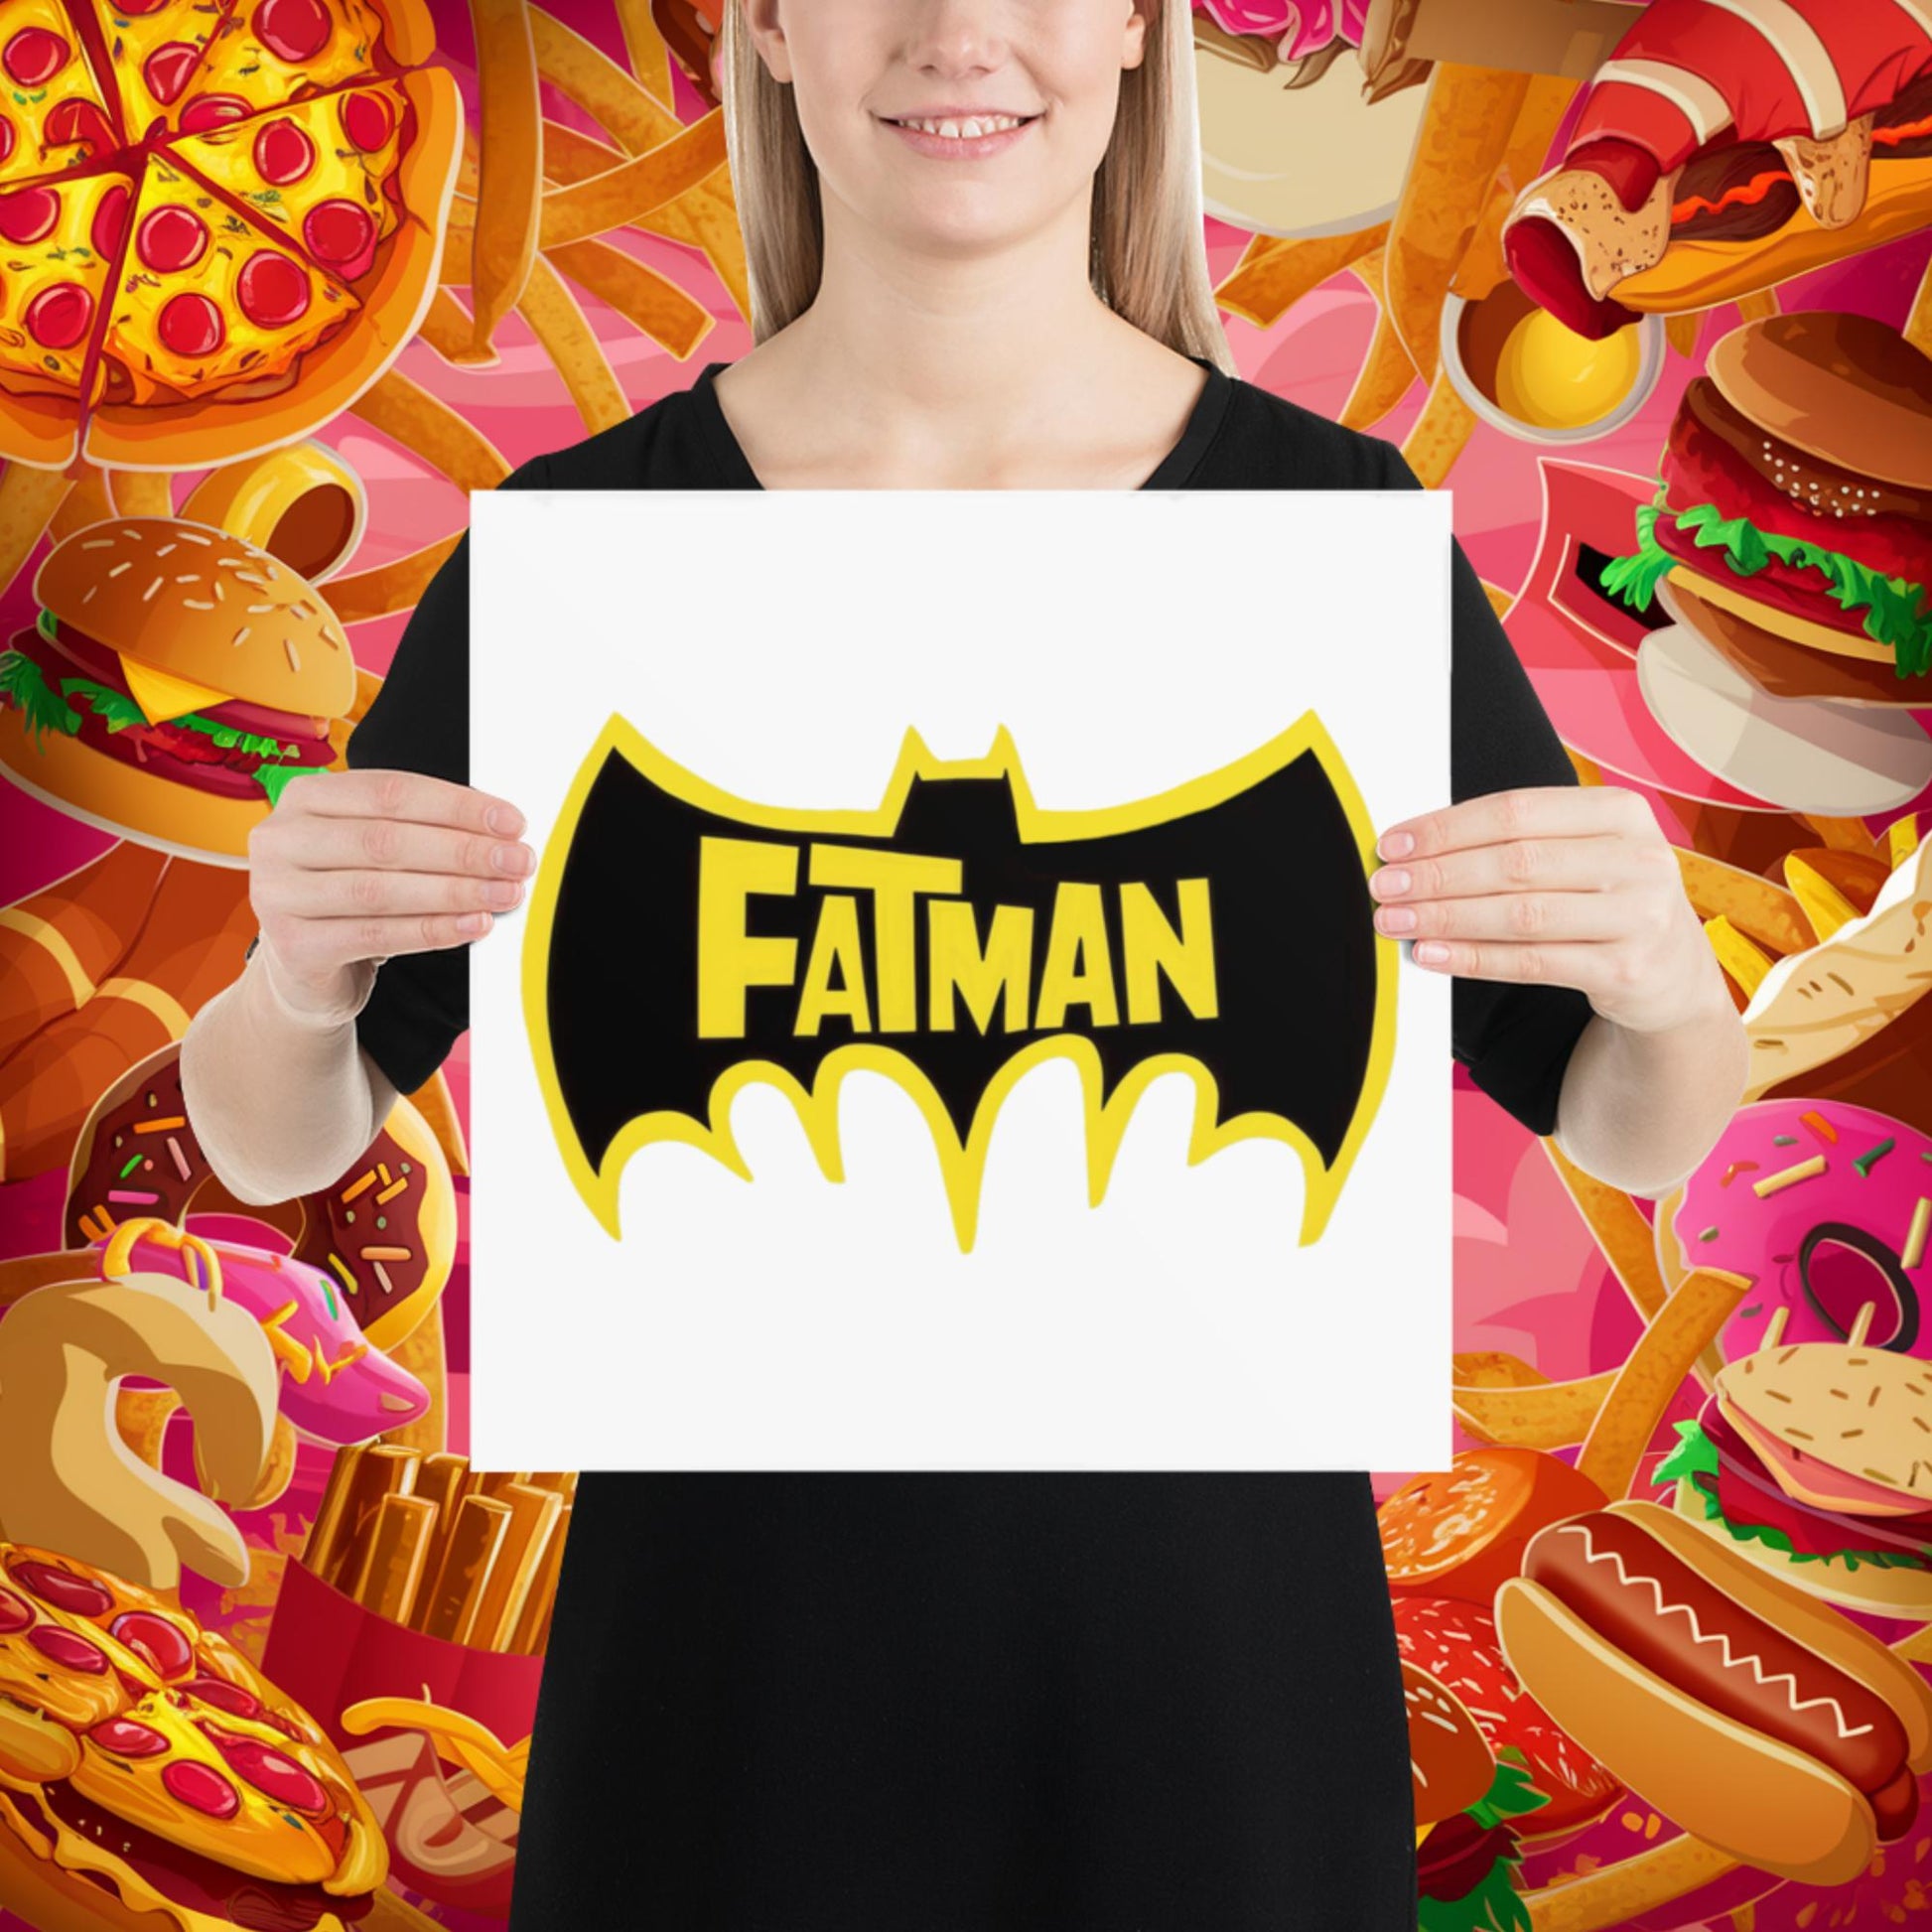 FatMan Funny Fat Superhero Poster Next Cult Brand